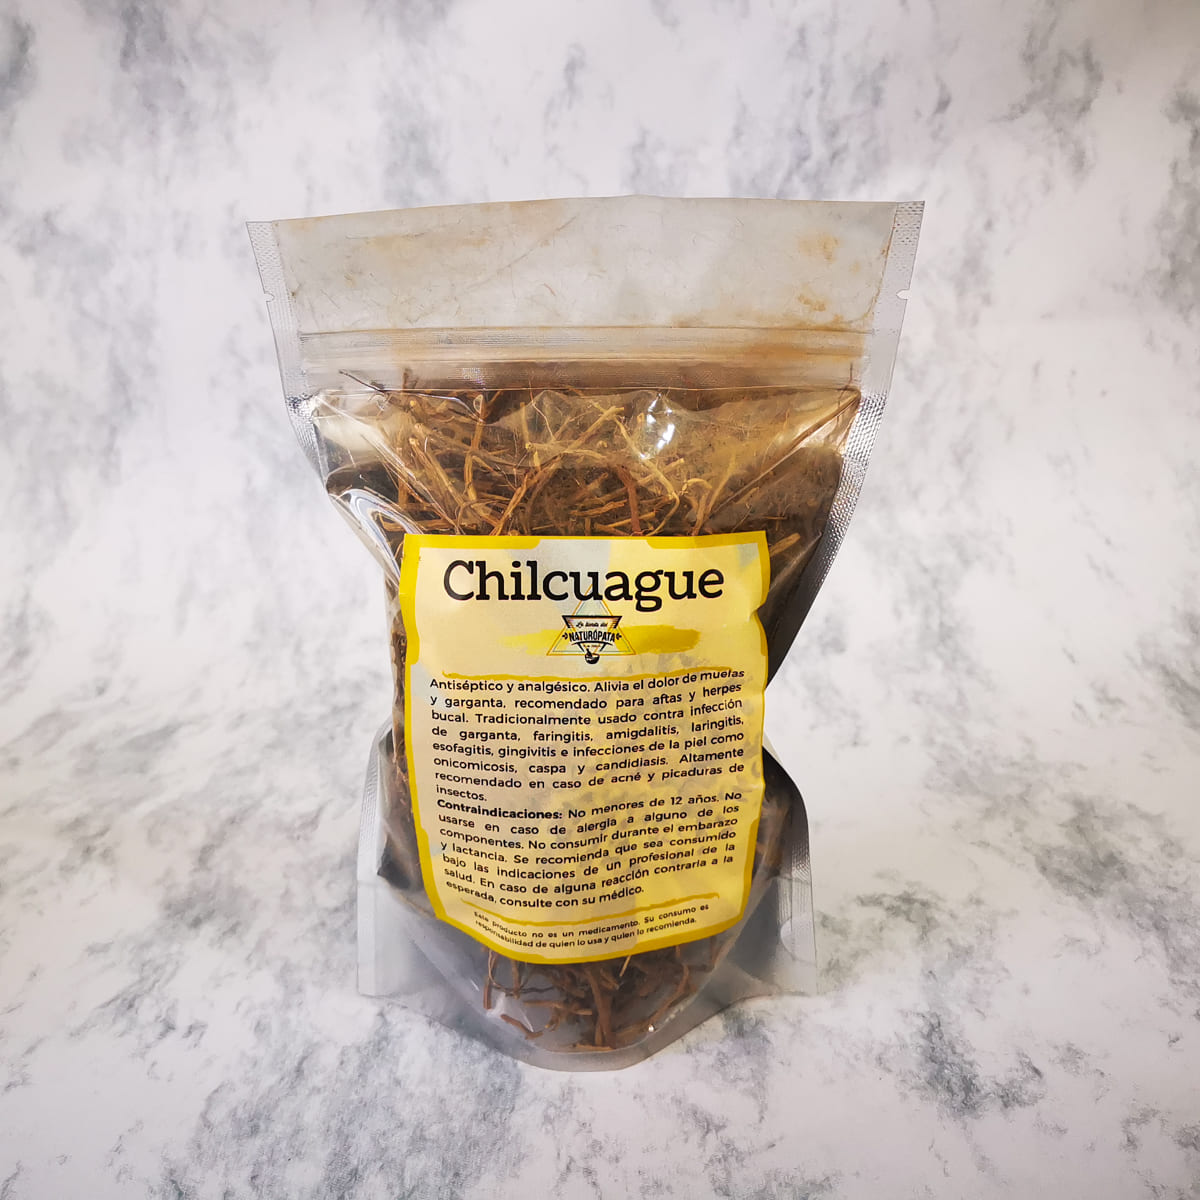 Chilcuague